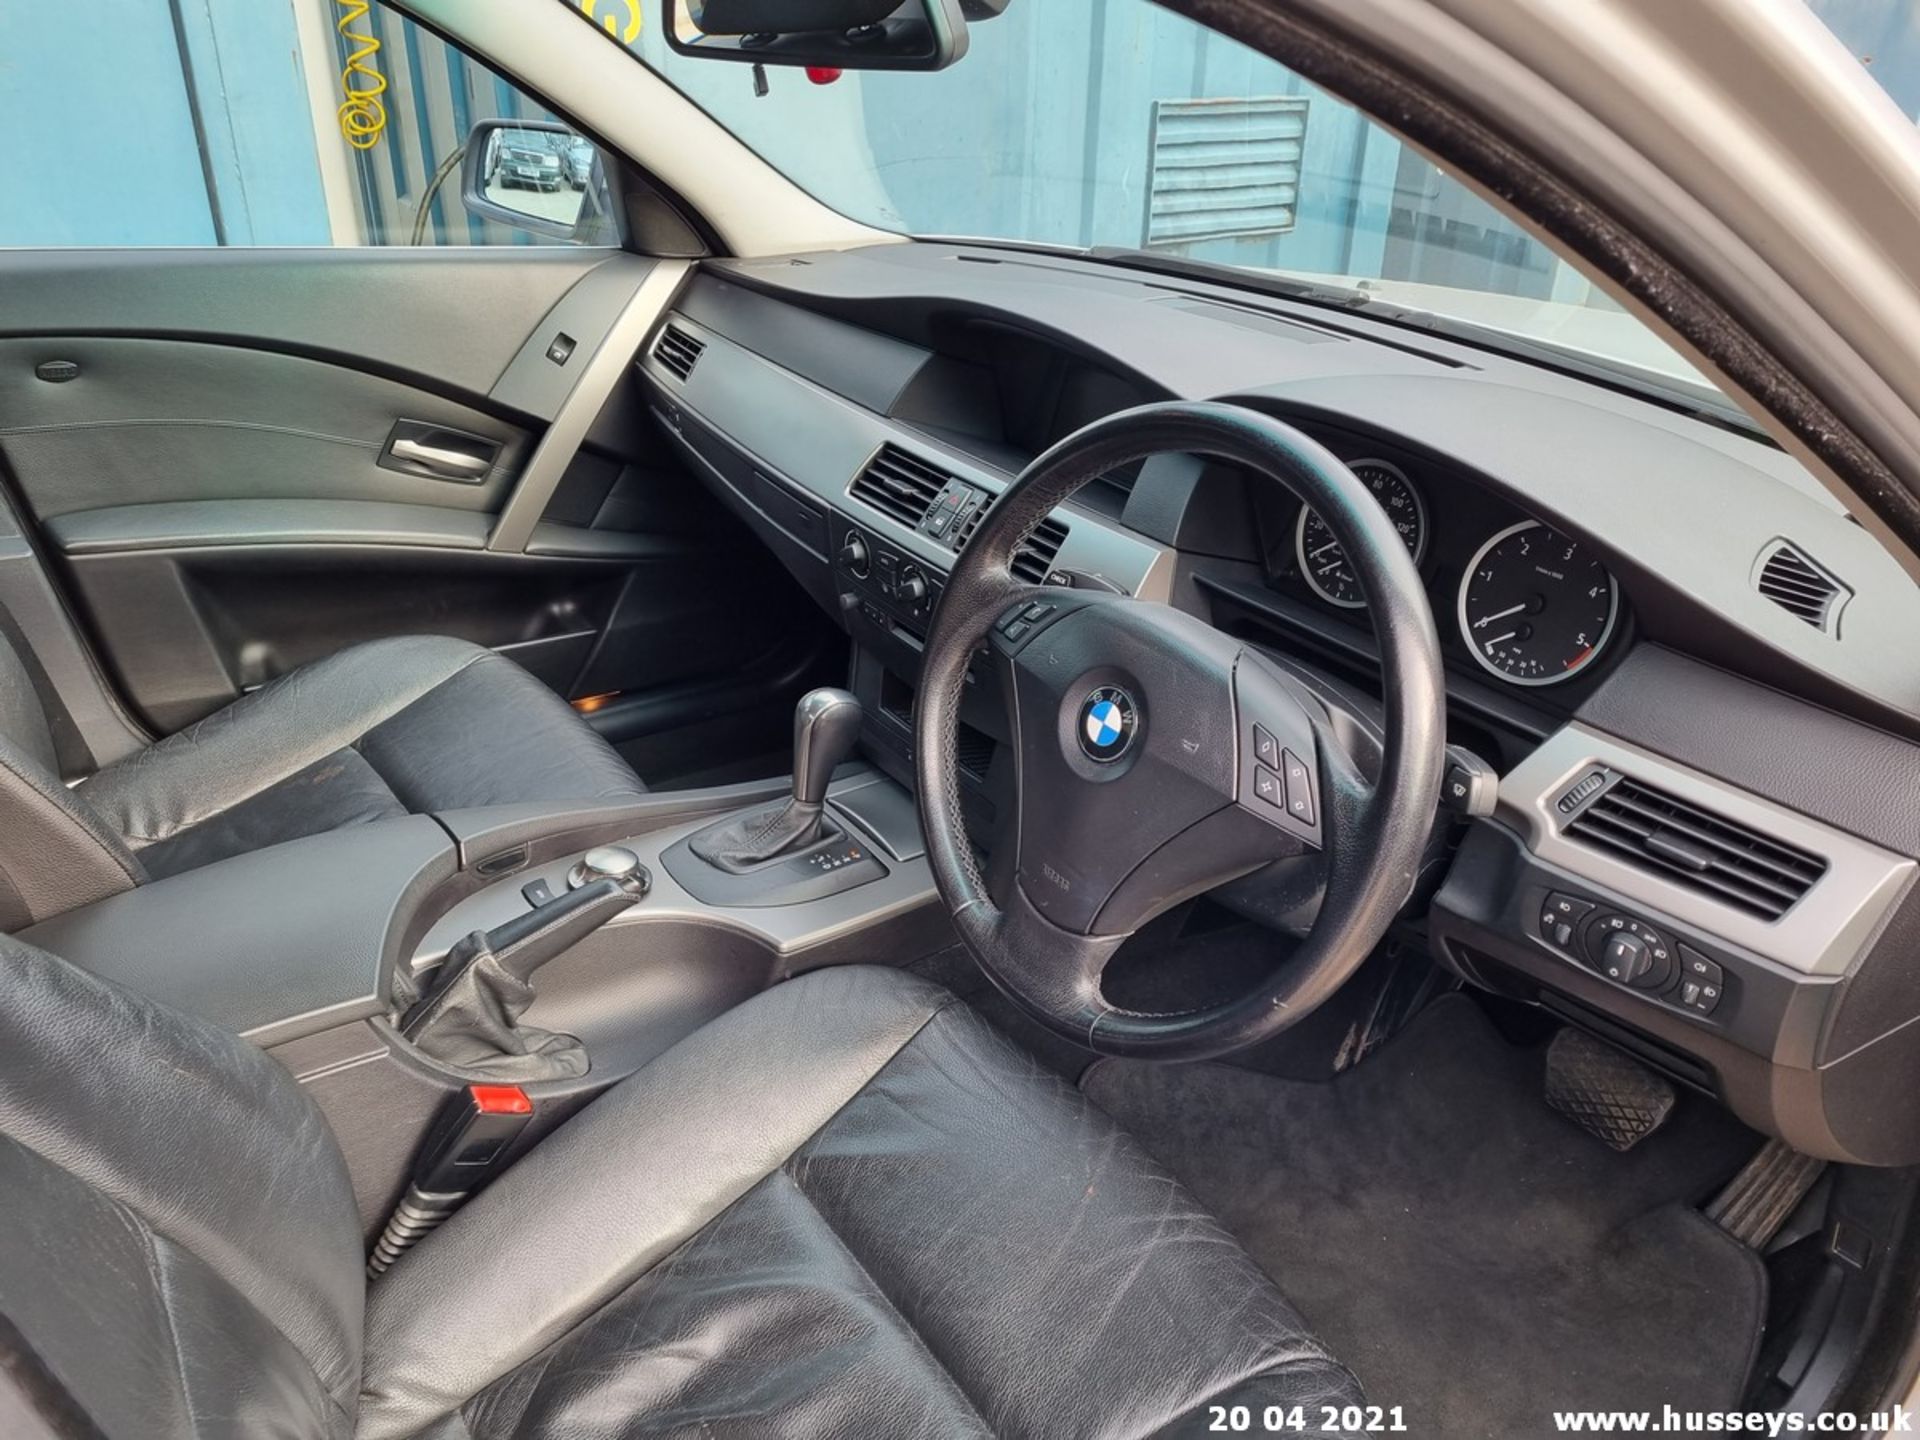 04/04 BMW 530D SE AUTO - 2993cc 4dr Saloon (Silver, 207k) - Image 6 of 15